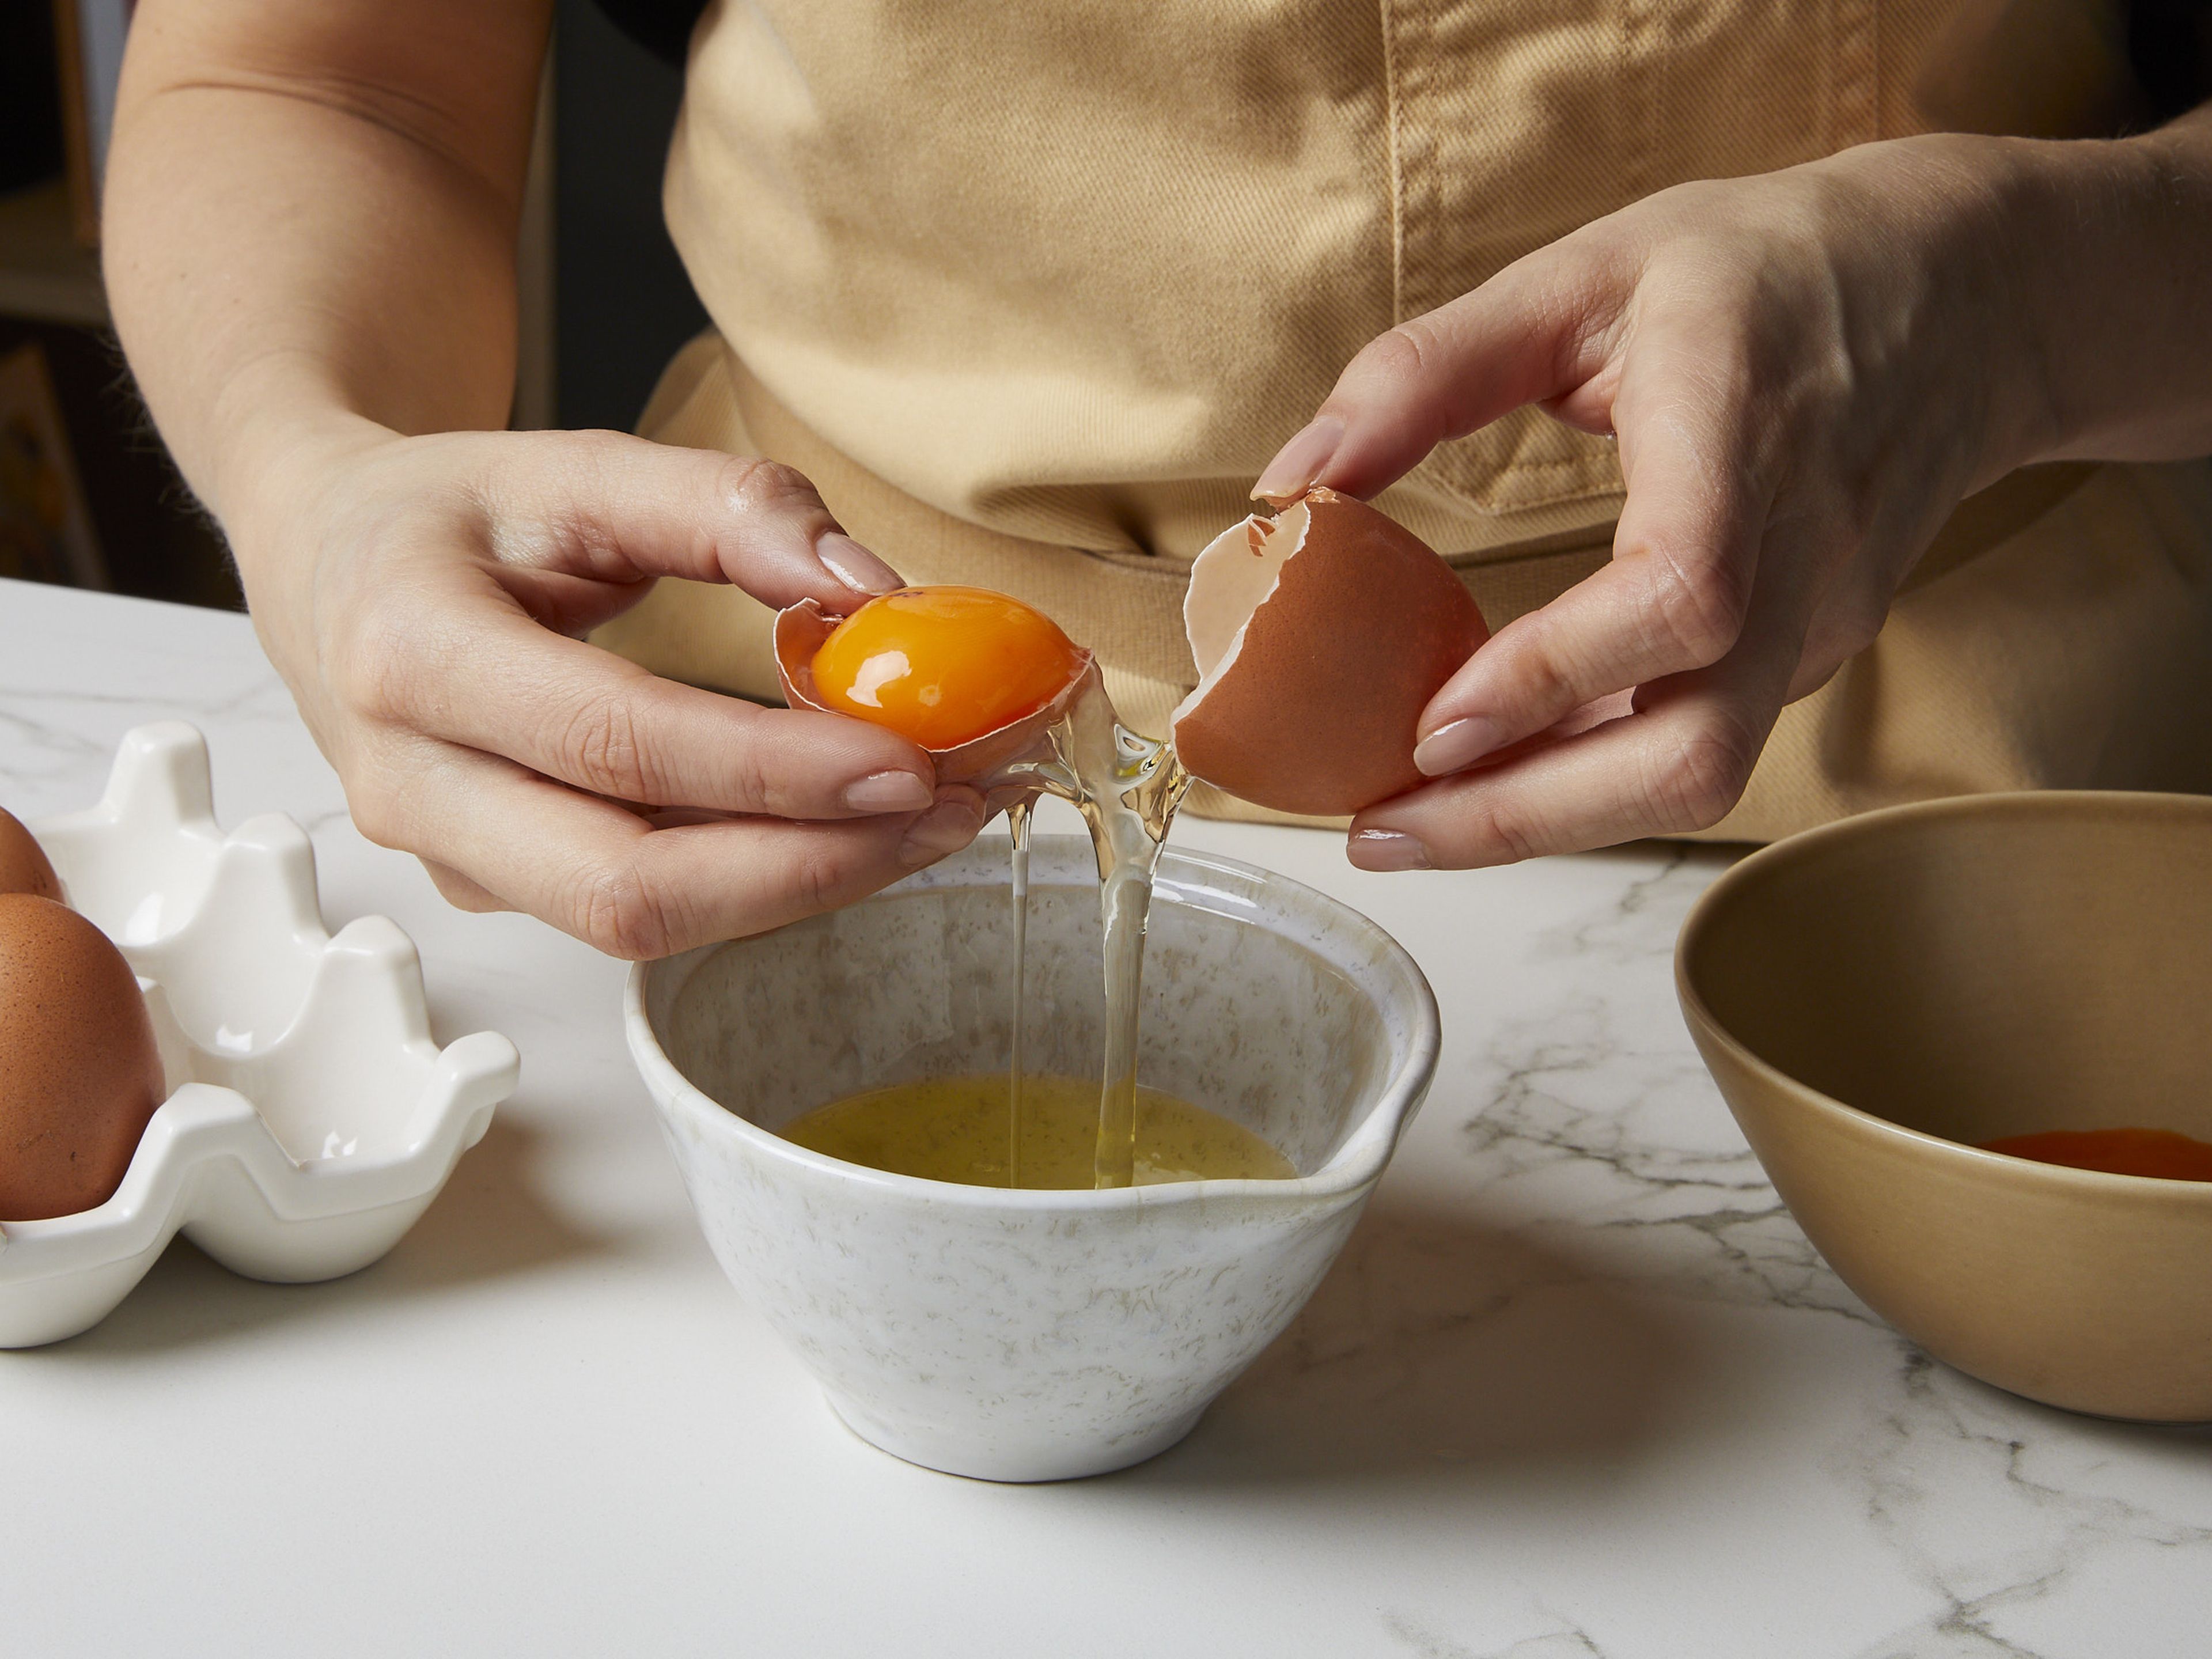 Für unser Sauce Hollandaise Rezept das Eigelb vom Eiweiß trennen und das Eigelb in eine kleine Schüssel geben. Das Eiweiß kannst du für eine andere Verwendung aufheben. Die Butter in einem Topf schmelzen, dabei darauf achten, dass sie nicht braun wird. Eigelb, Zitronensaft, Salz und Pfeffer in einem hohen Gefäß wie einem Messbecher verrühren.